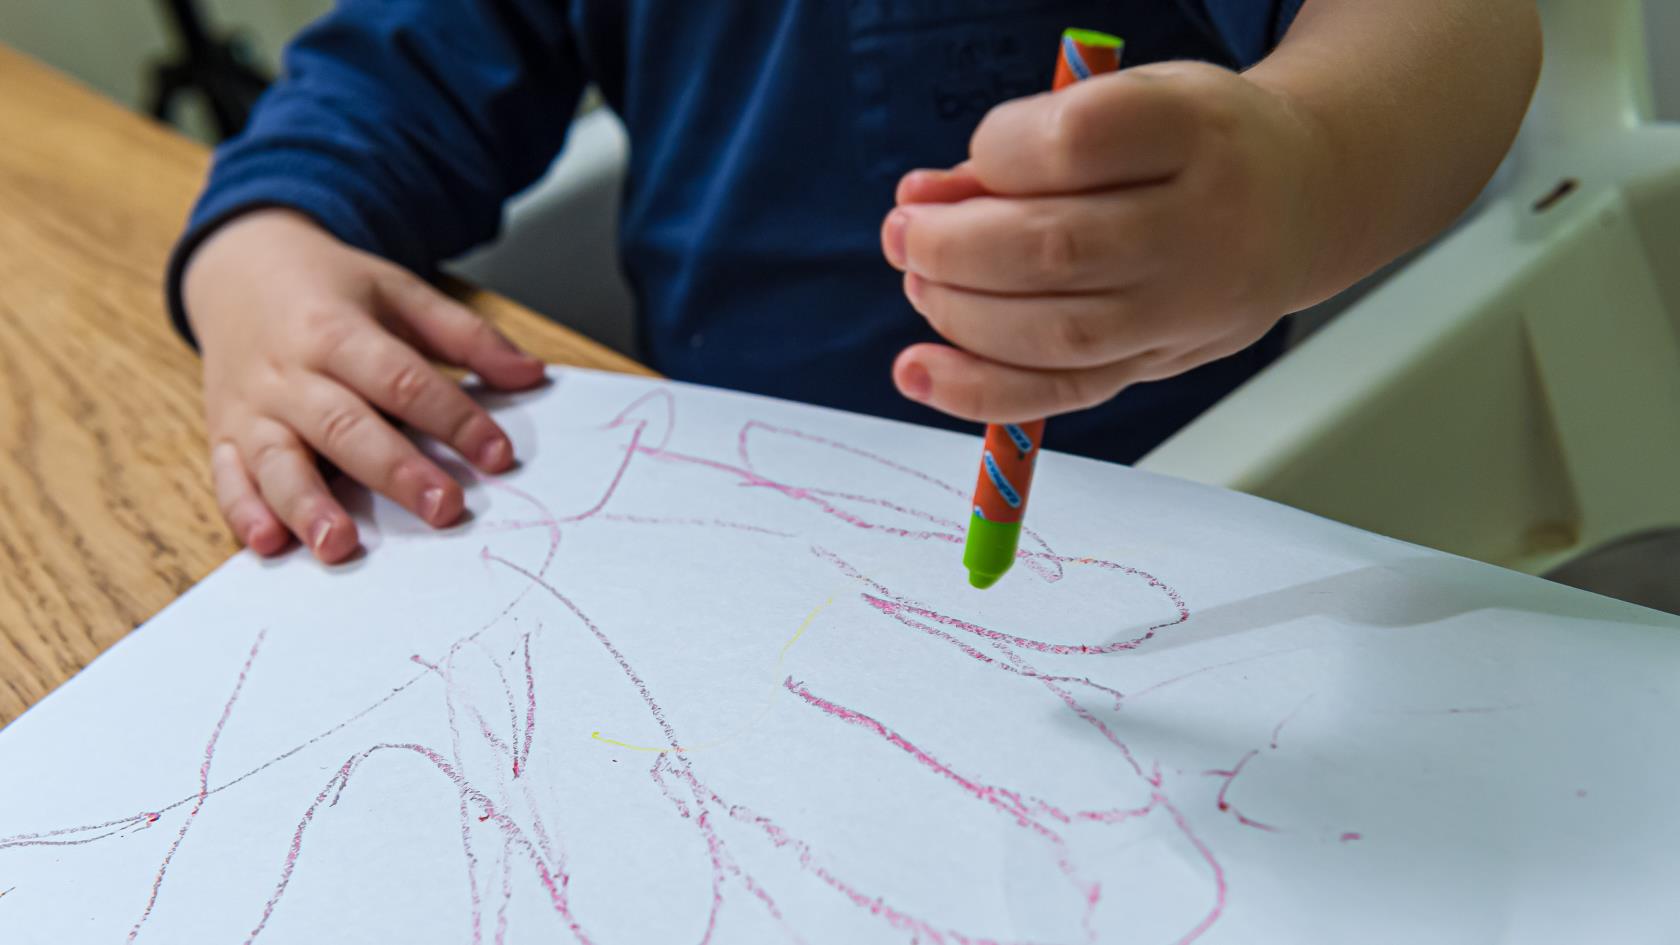 Ett barn ritar med kritor på ett papper.